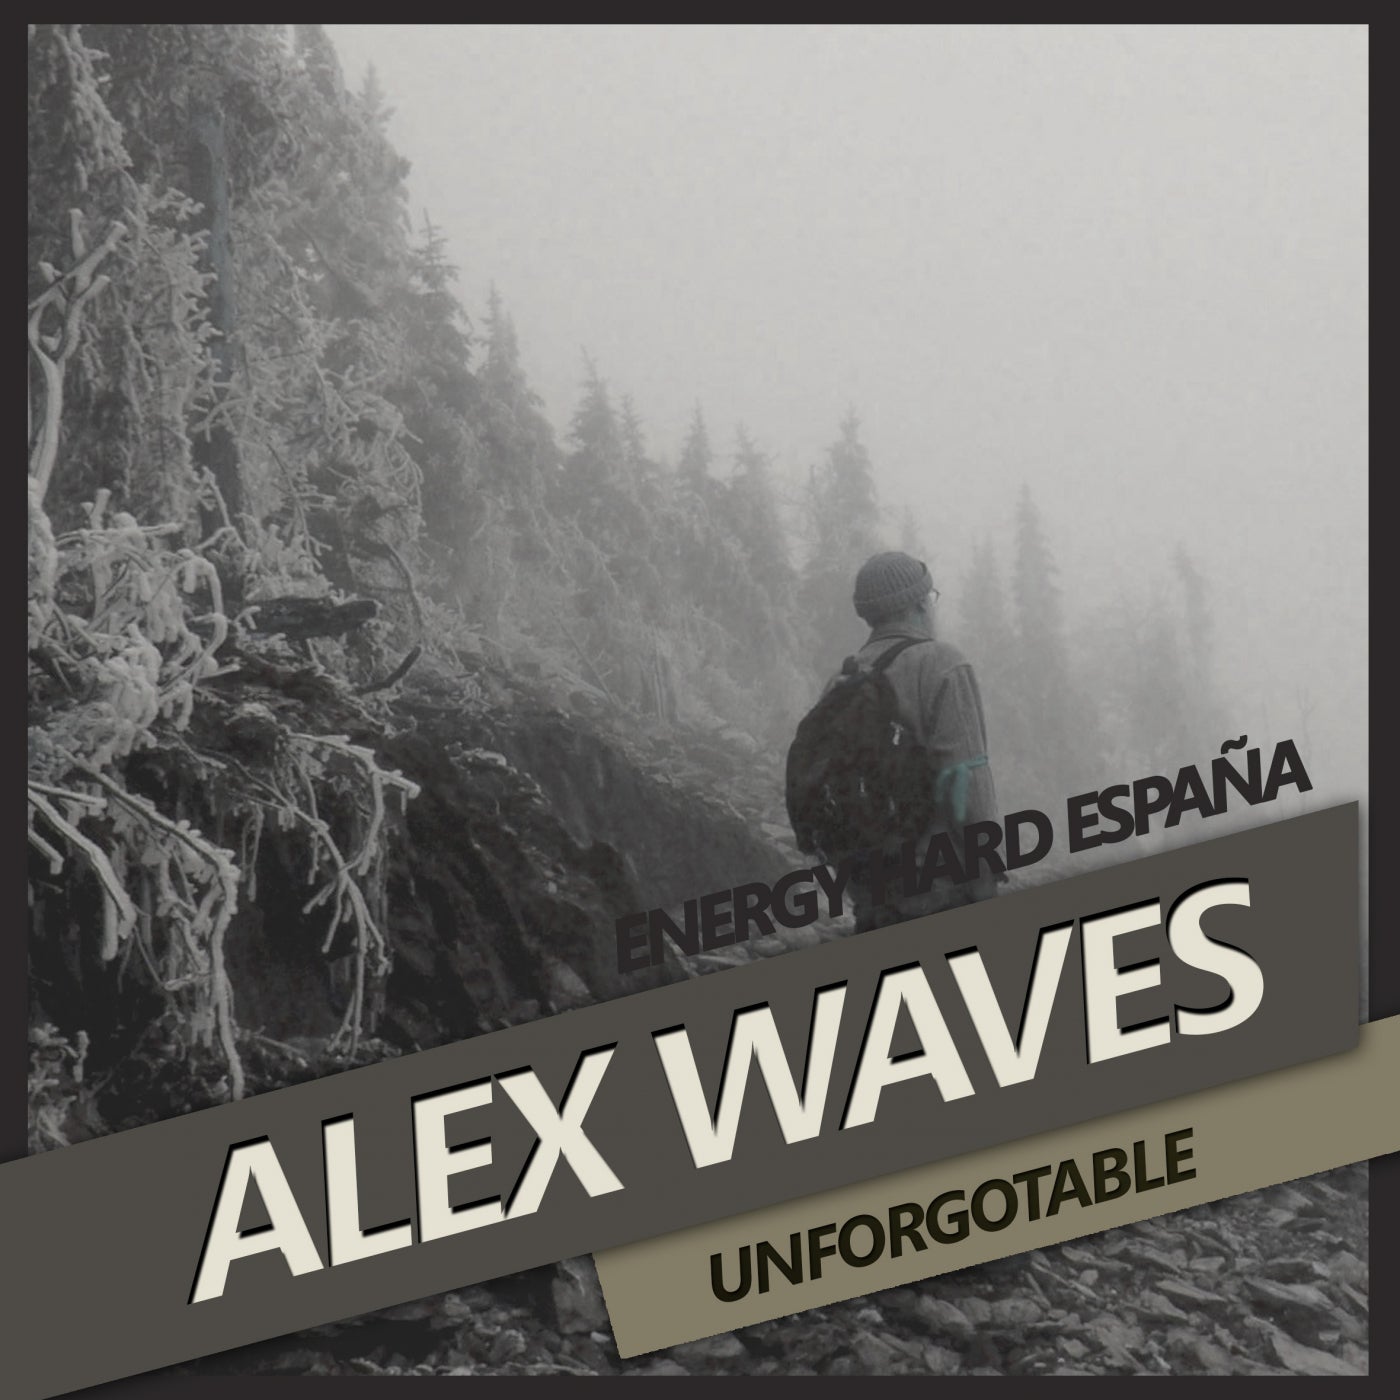 [EHE190] Alex Waves - Unforgotable 329d1f3d-4250-479a-a649-2cd157f51f5e